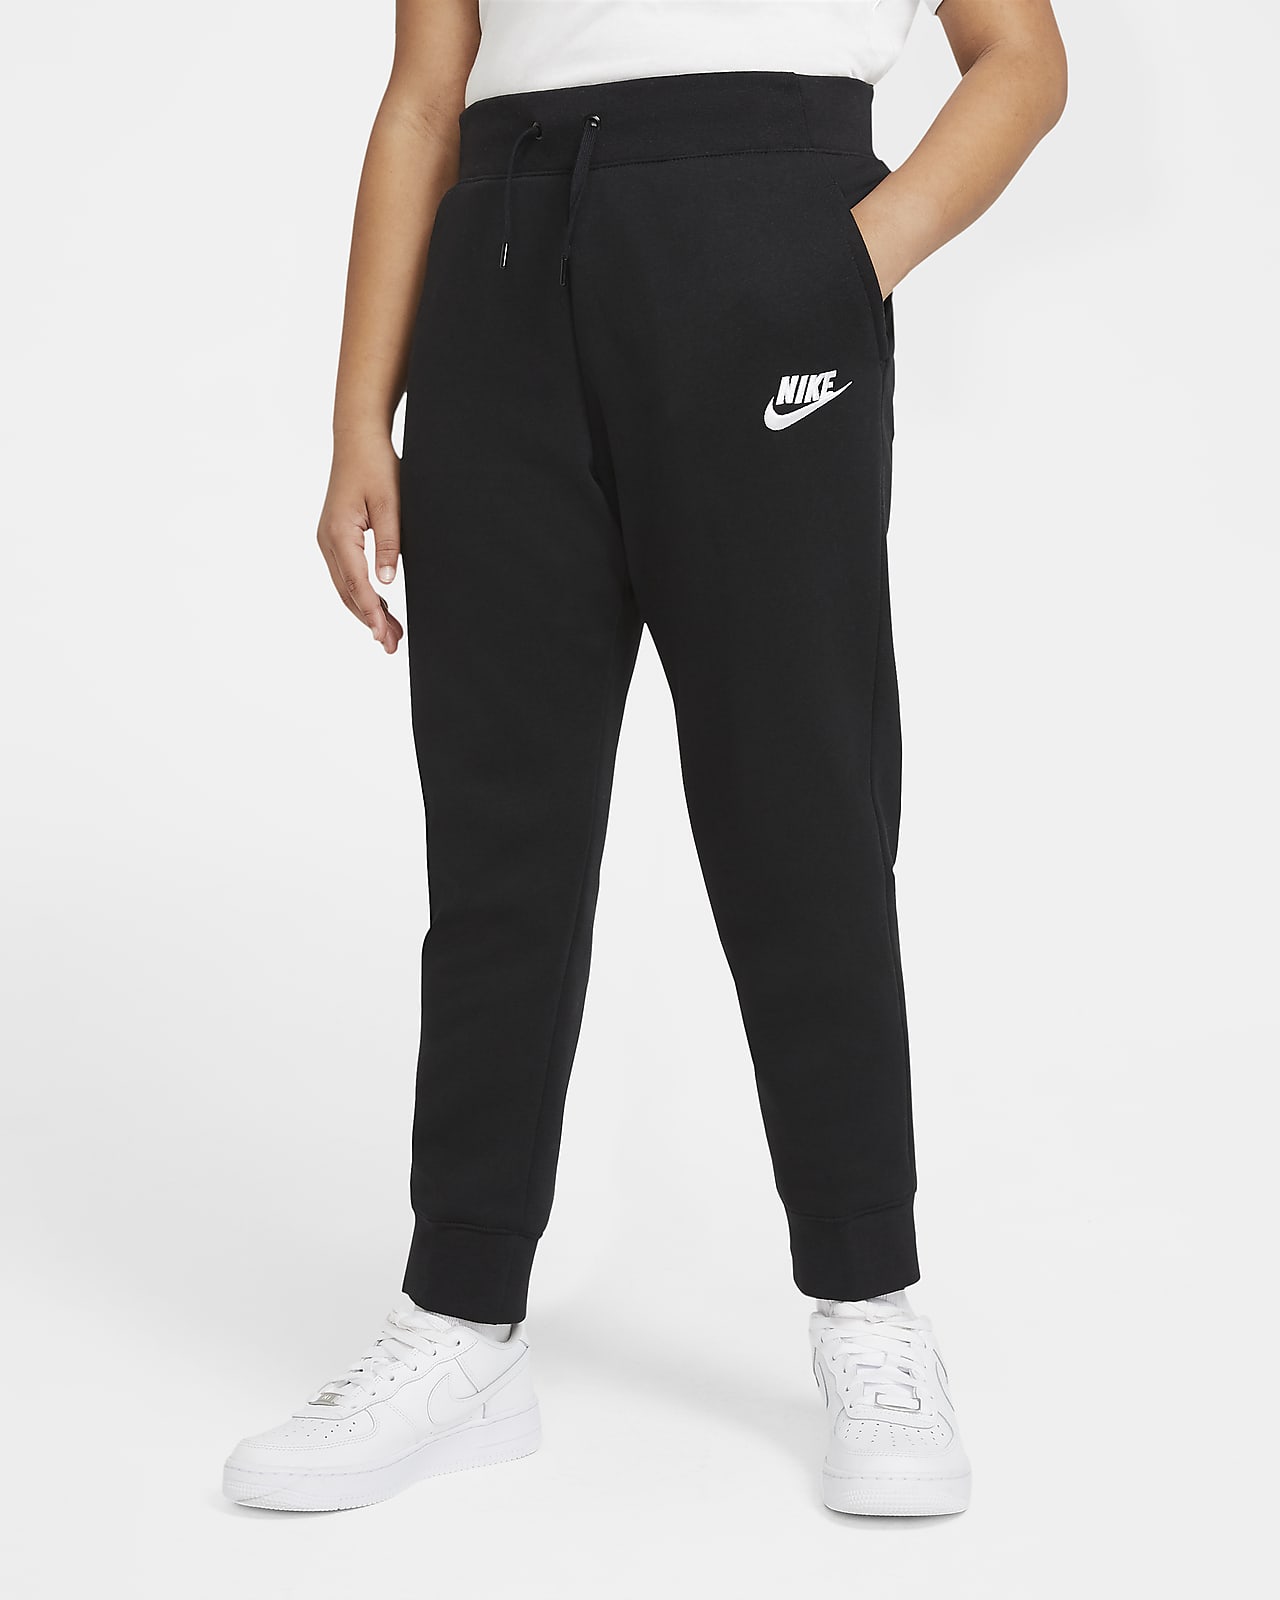 Nike Sportswear Older Kids' (Girls') Trousers (Extended Size). Nike SK